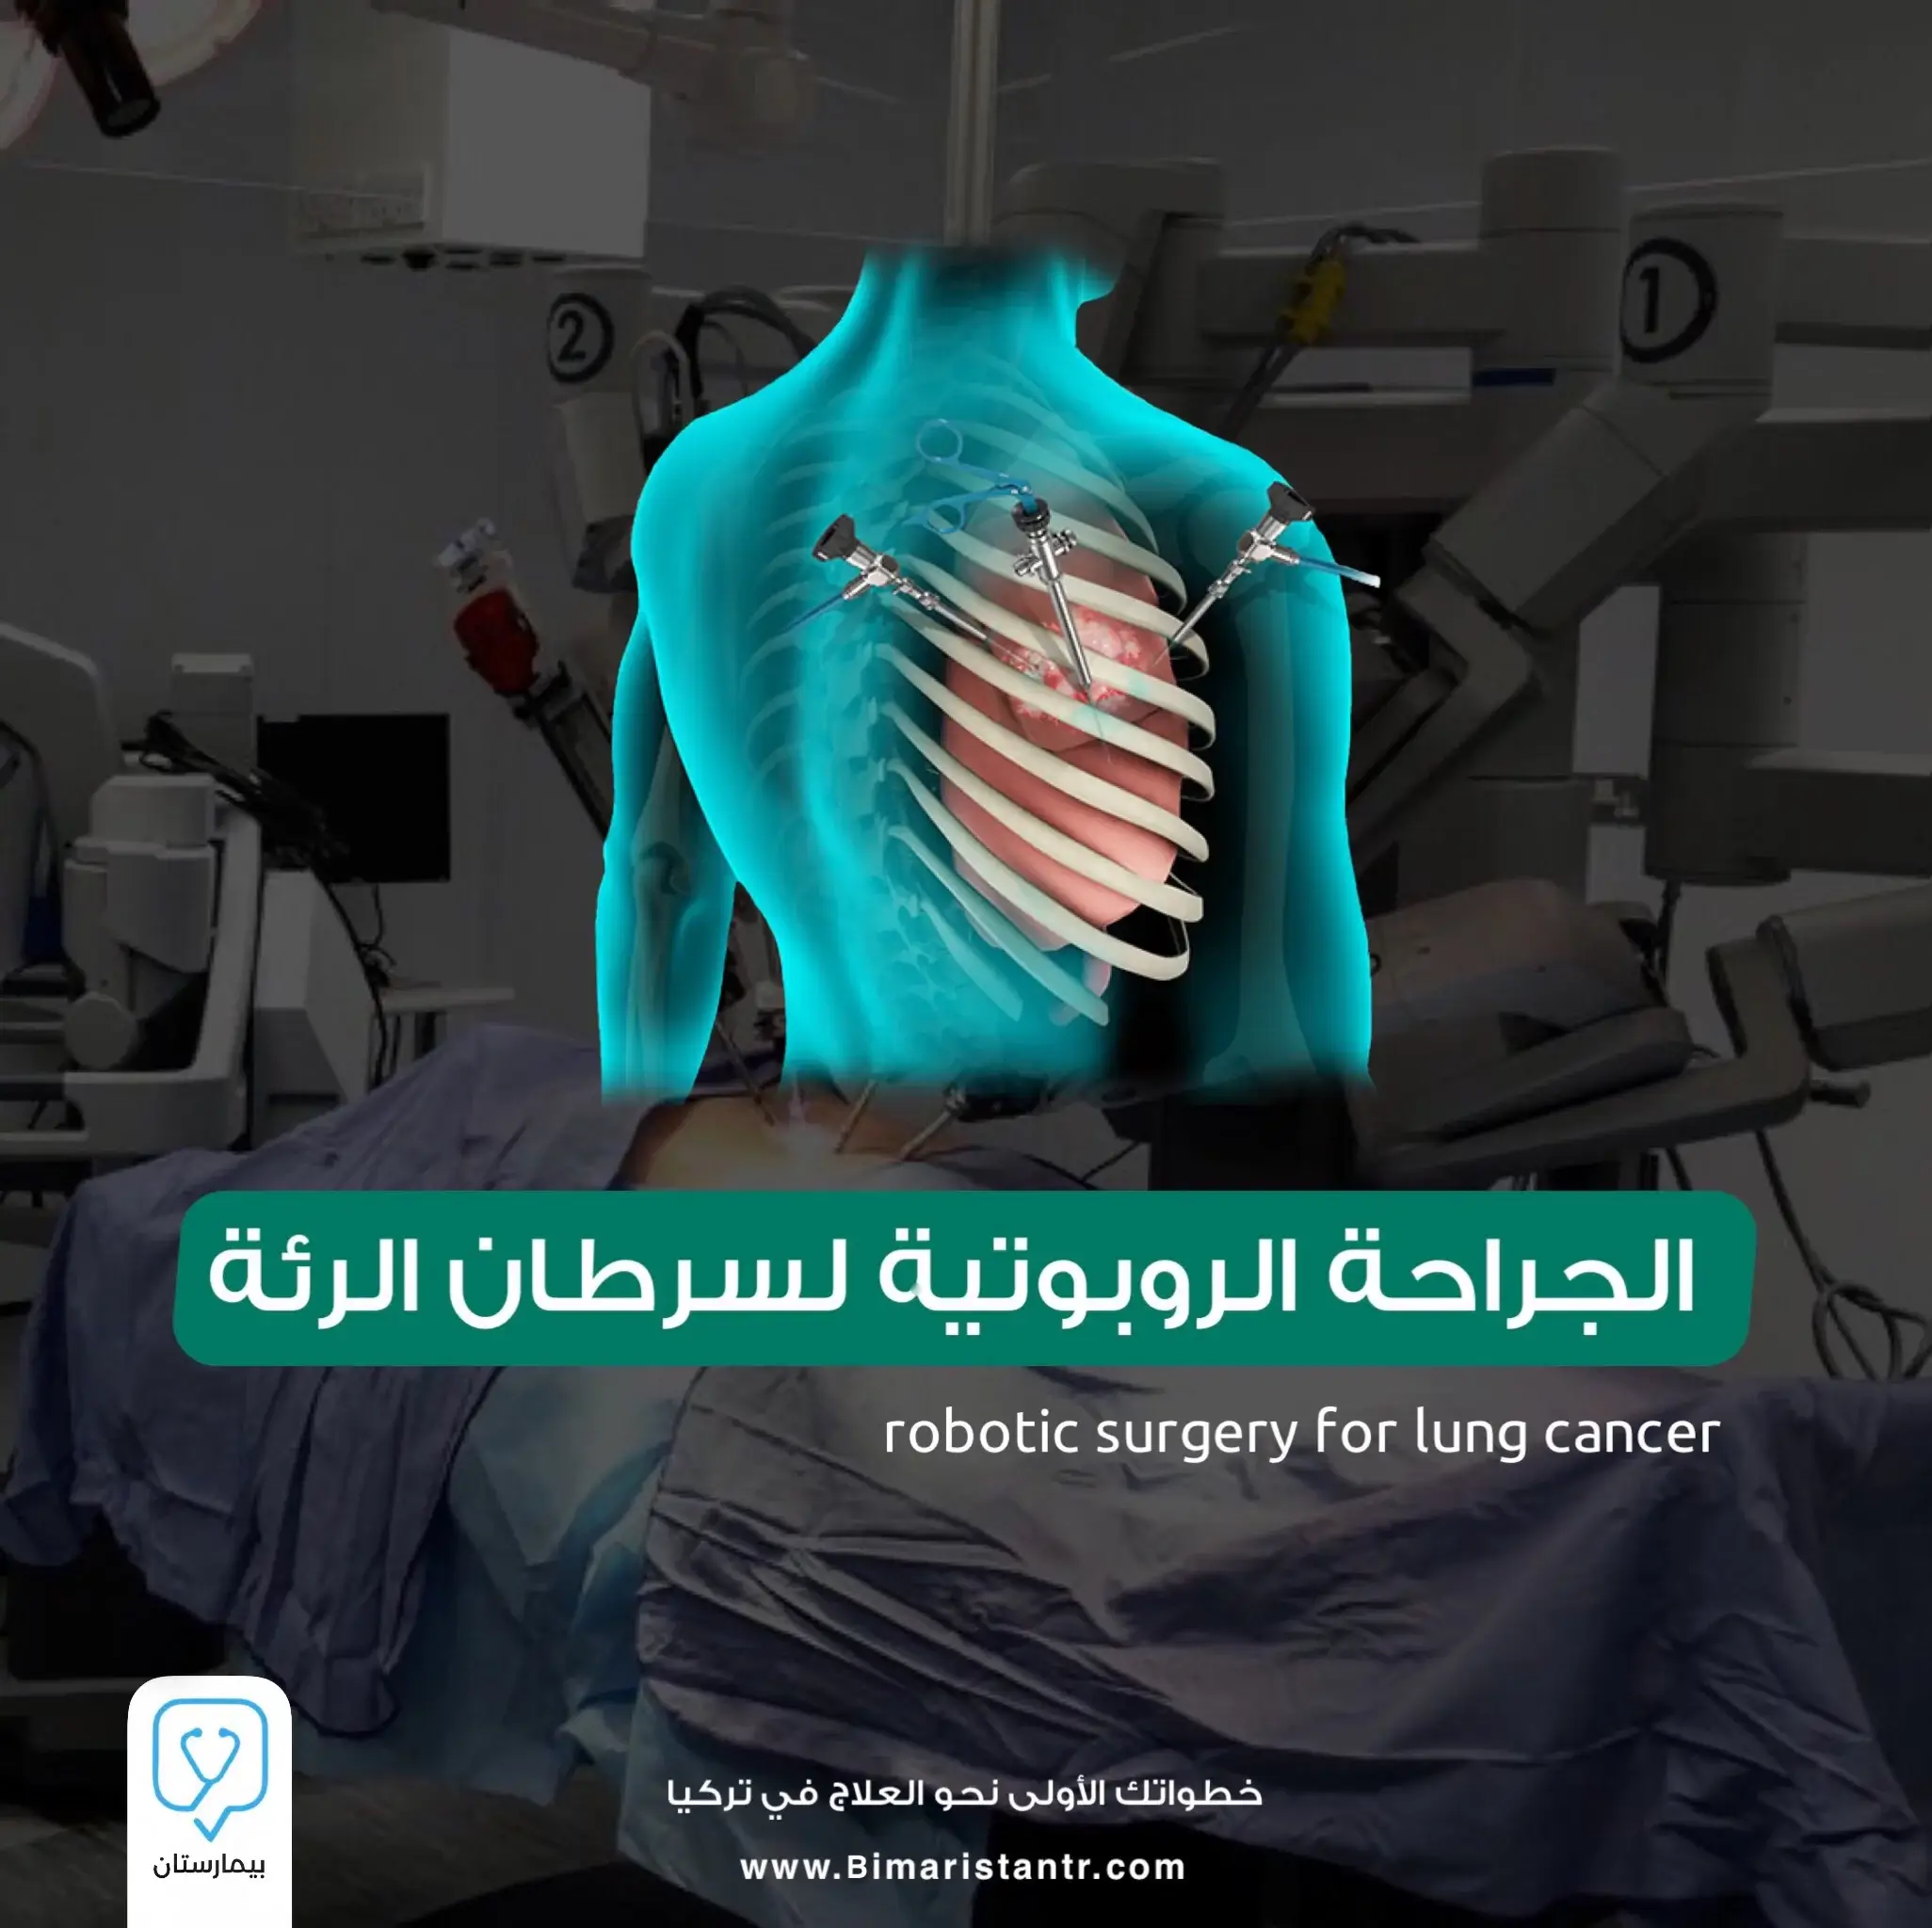 الجراحة الروبوتية لسرطان الرئة في تركيا